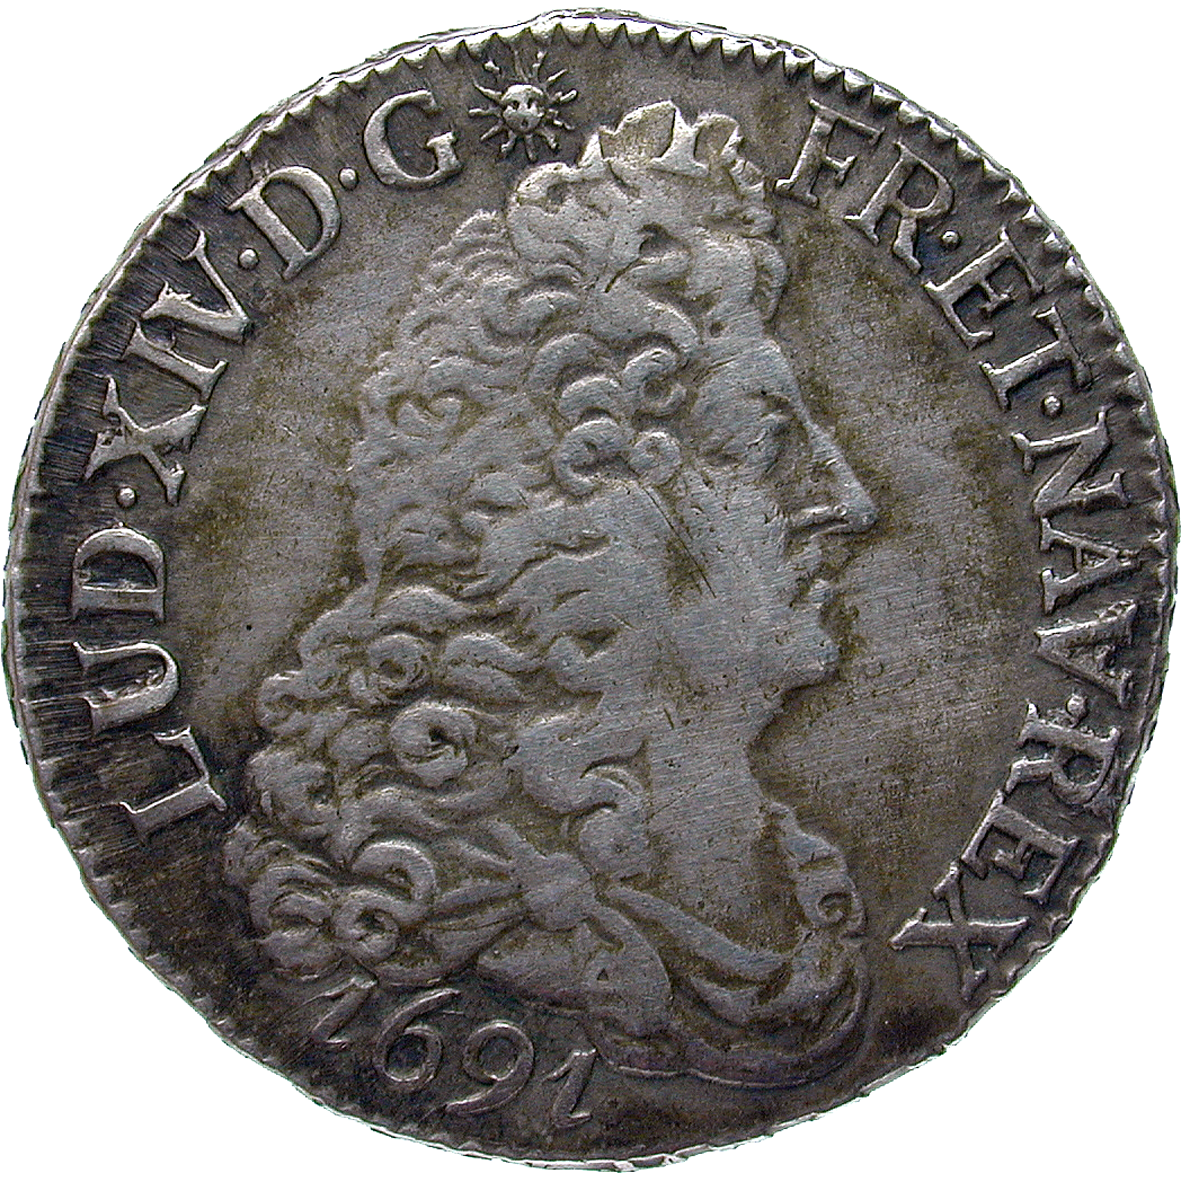 Königreich Frankreich, Ludwig XIV., 1/2 Ecu 1691 (obverse)